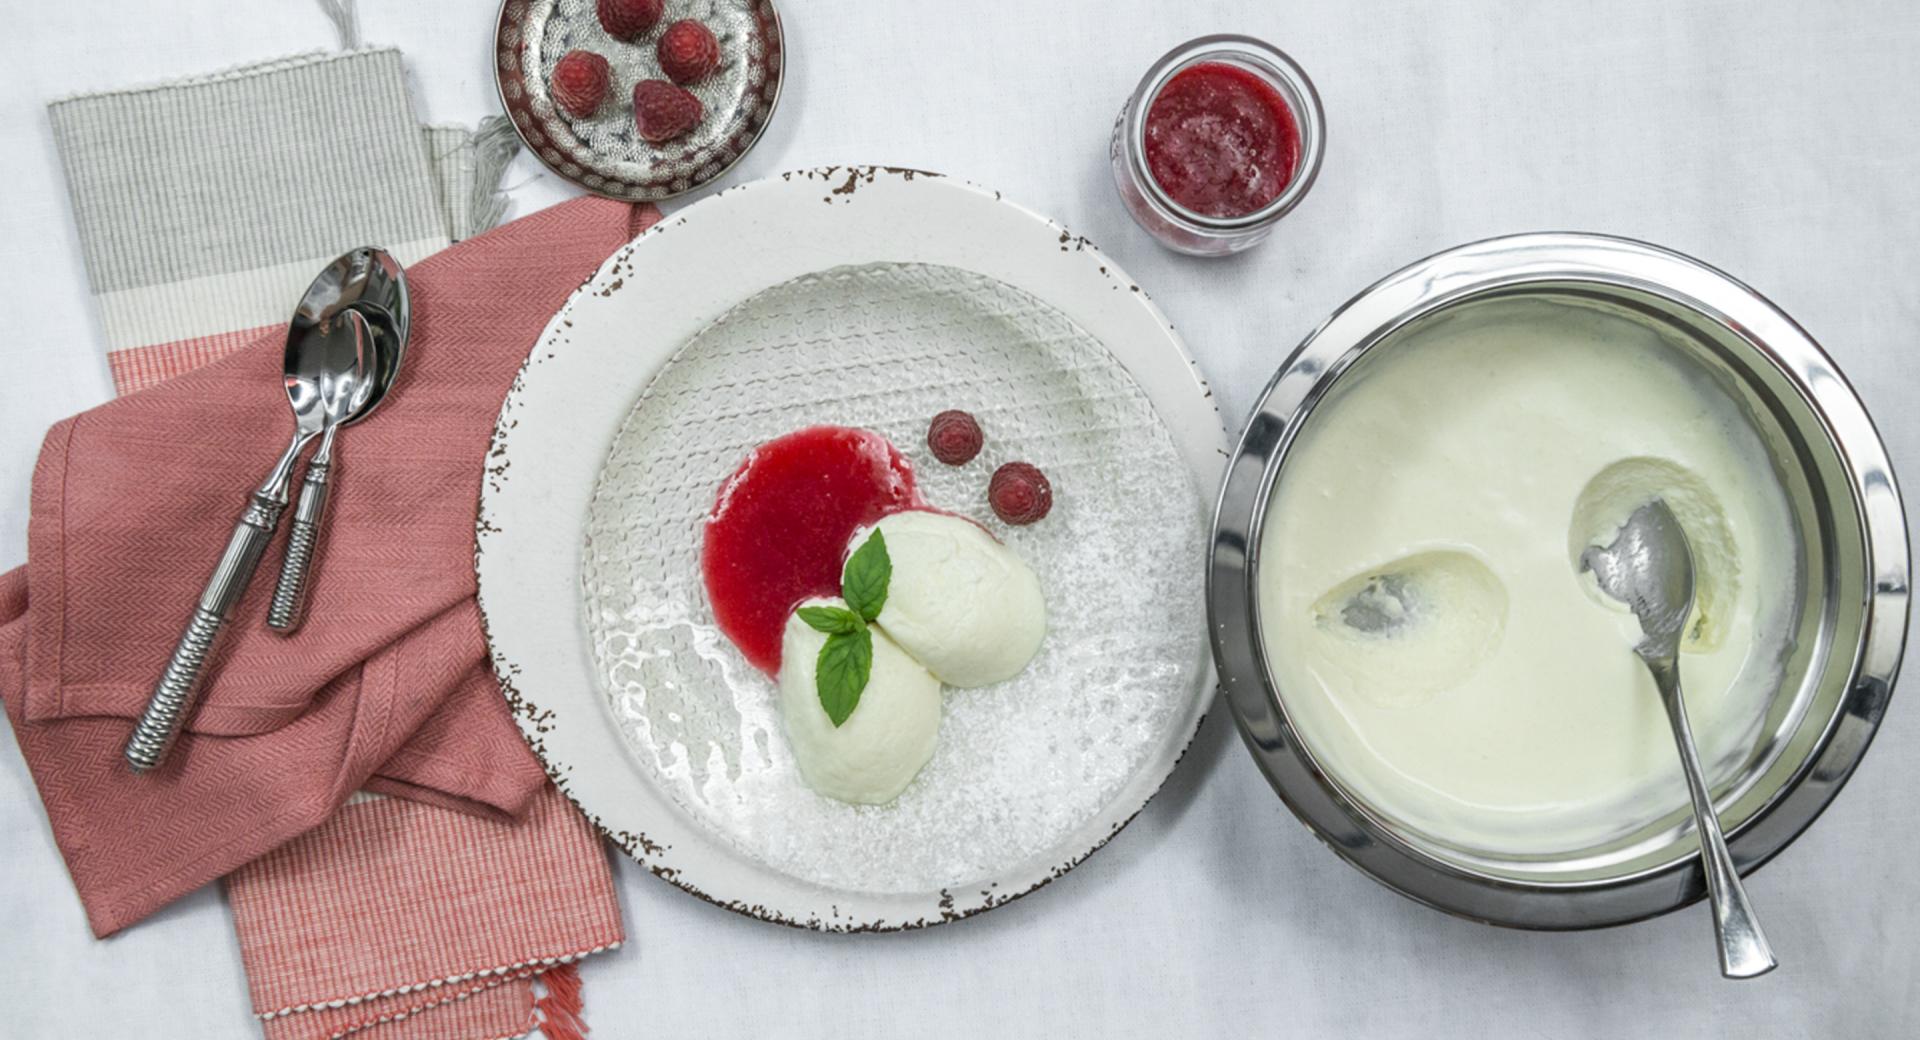 Elderflower and buttermilk dessert with raspberry puree